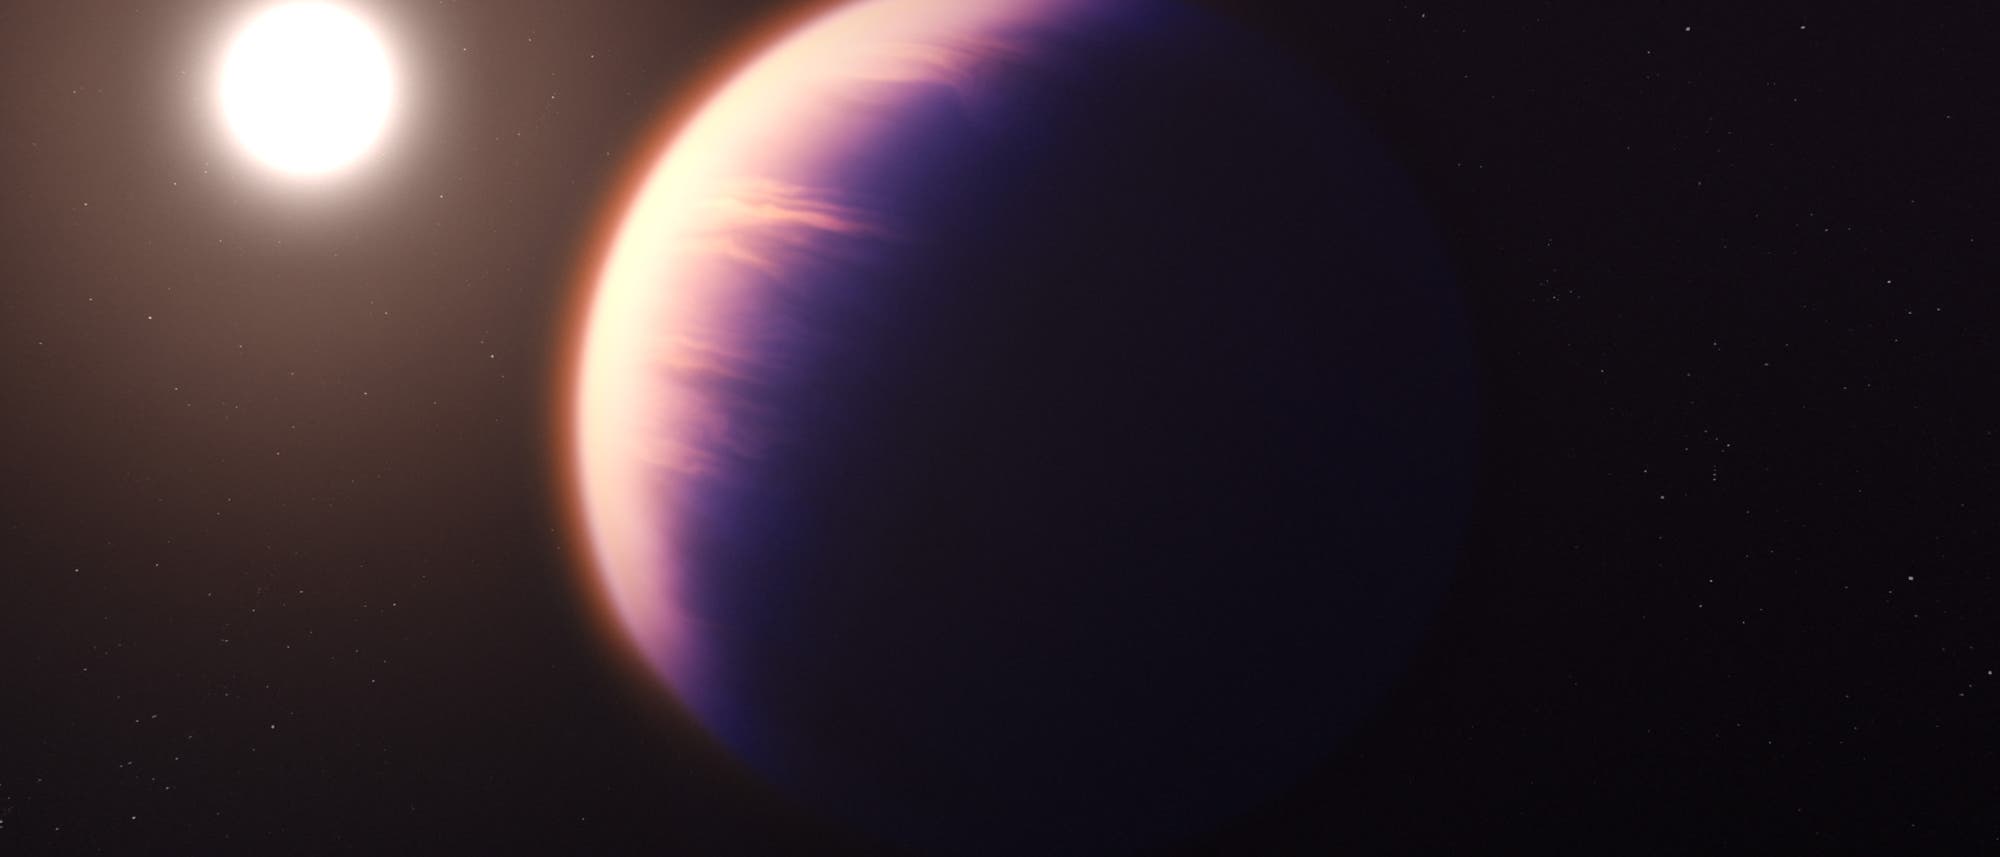 Illustration des Exoplaneten WASP-39b, eines Gasriesen, der von einem Stern angestrahlt wird.